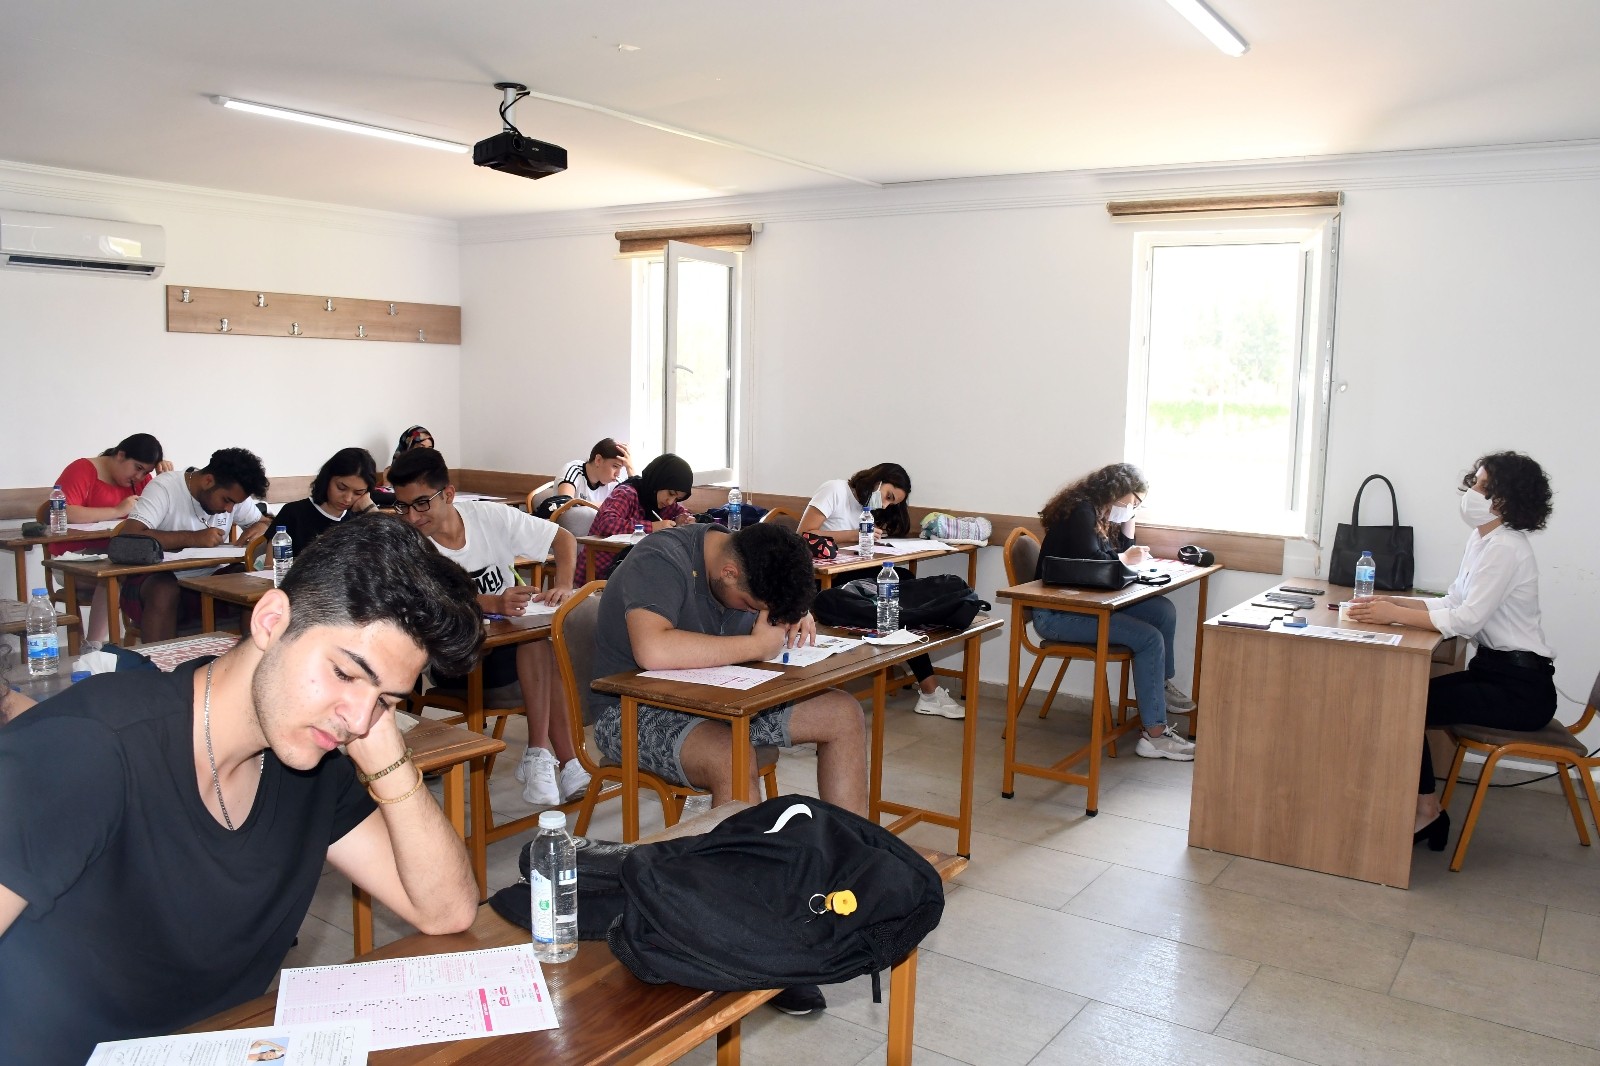 Kemer Ahmet Erkal Destek Eğitim Kurs Merkeziden eğitim alan öğrenciler, deneme sınavına girdi.